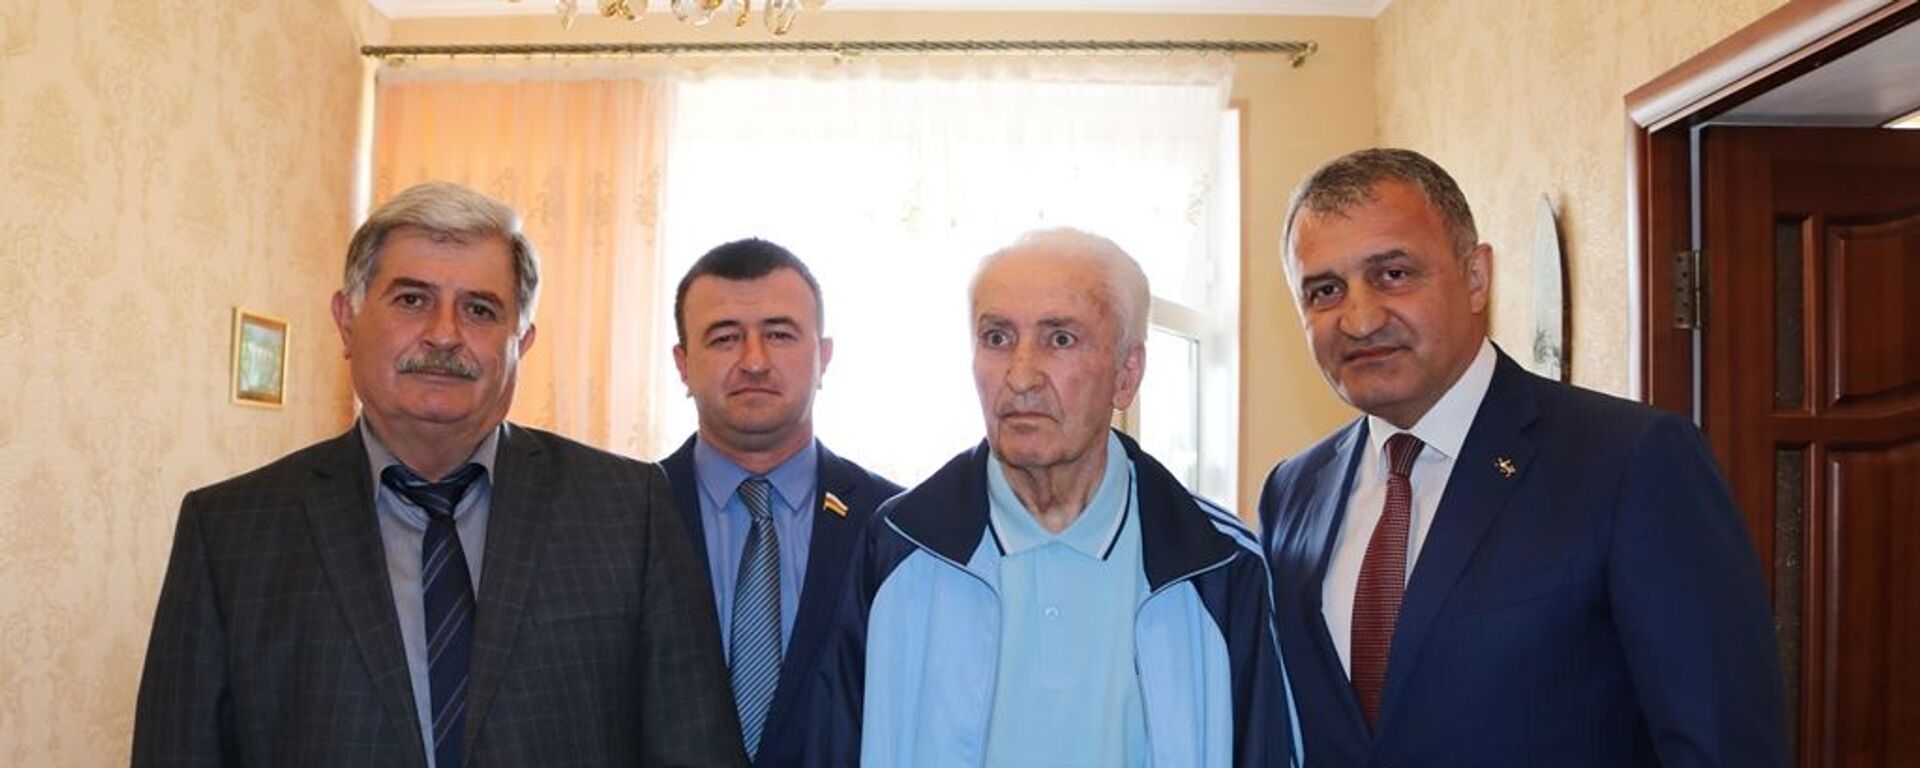 Инал Мамиев отмечает свое 85-летие - Sputnik Южная Осетия, 1920, 06.05.2019